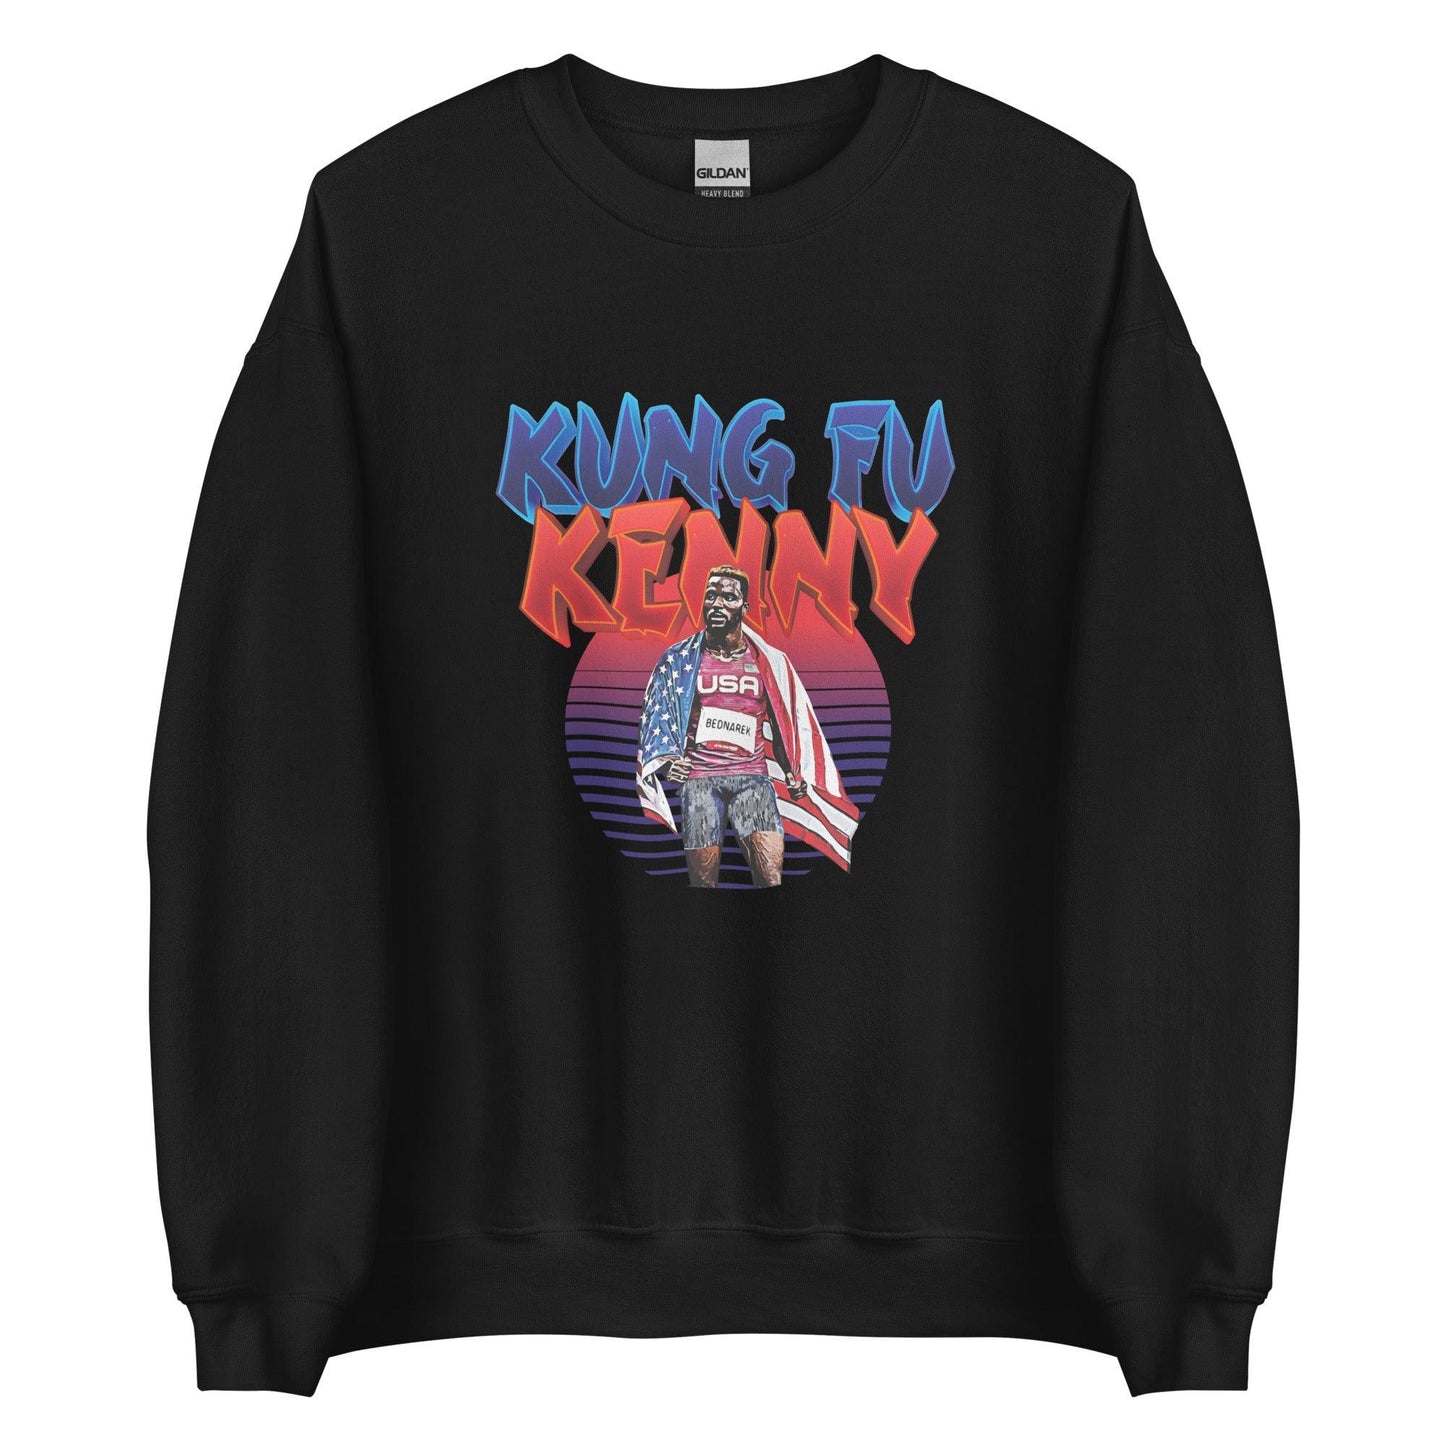 Kenny Bednarek "Kung Fu Kenny" Sweatshirt - Fan Arch